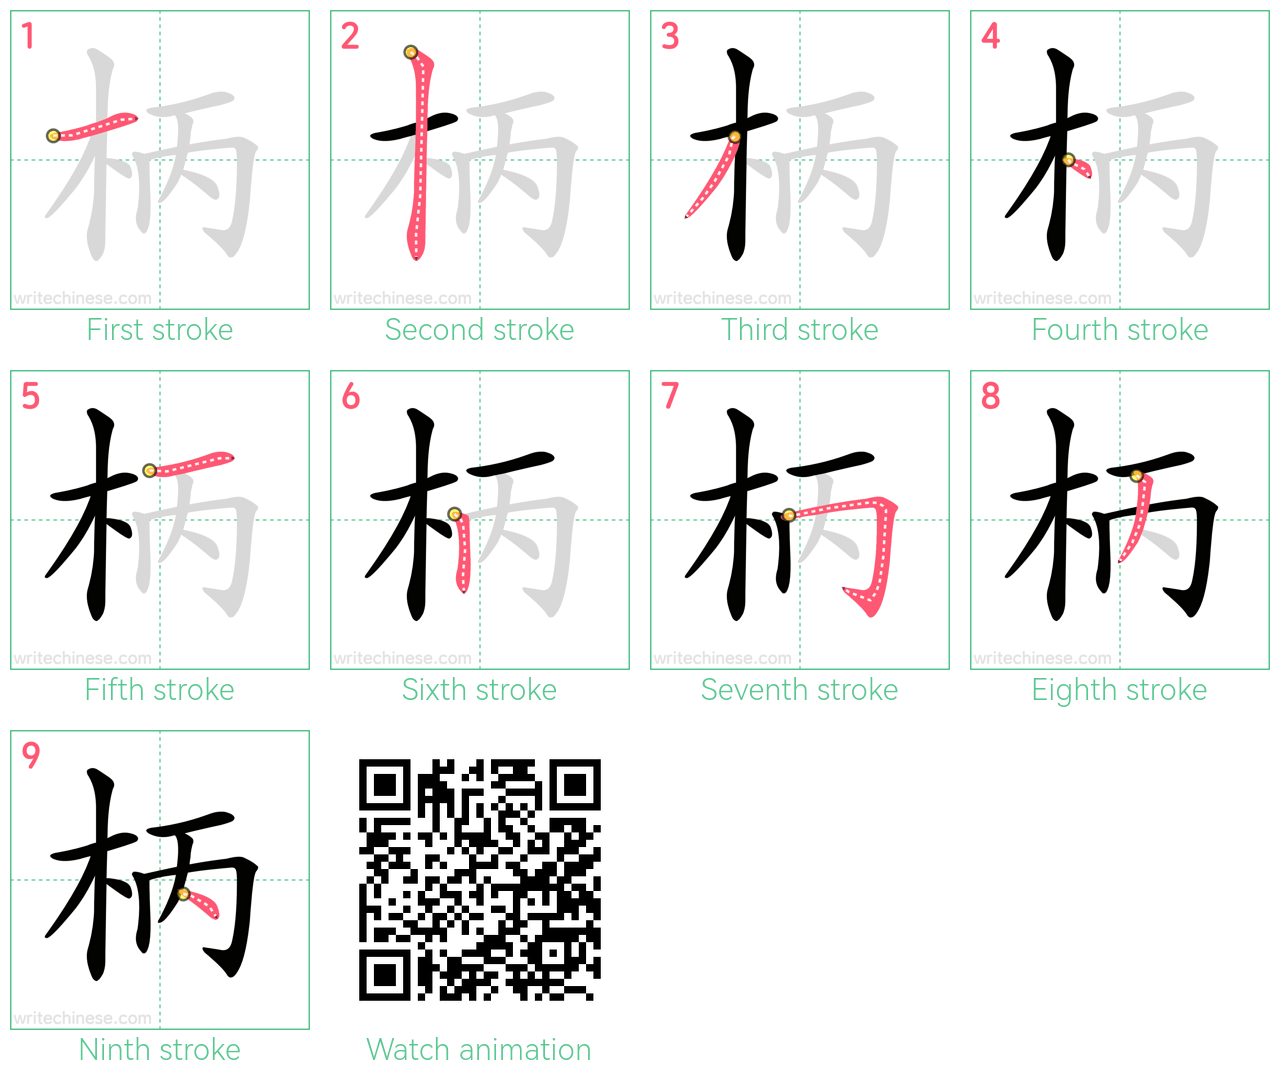 柄 step-by-step stroke order diagrams